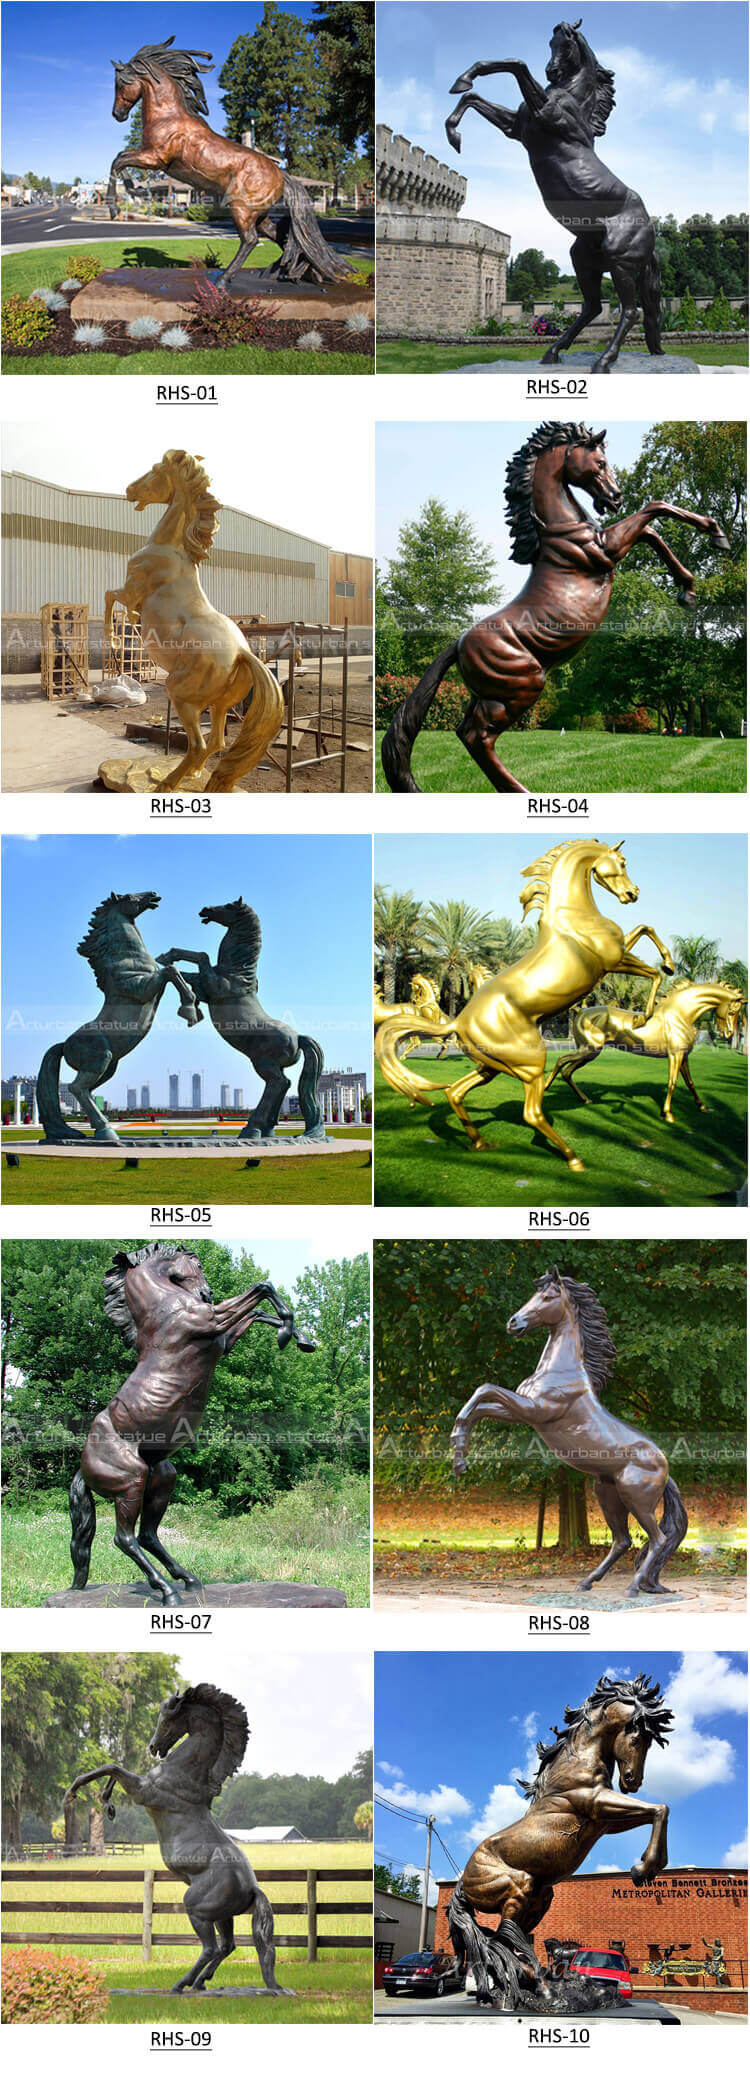 Jumping Horse Sculpture